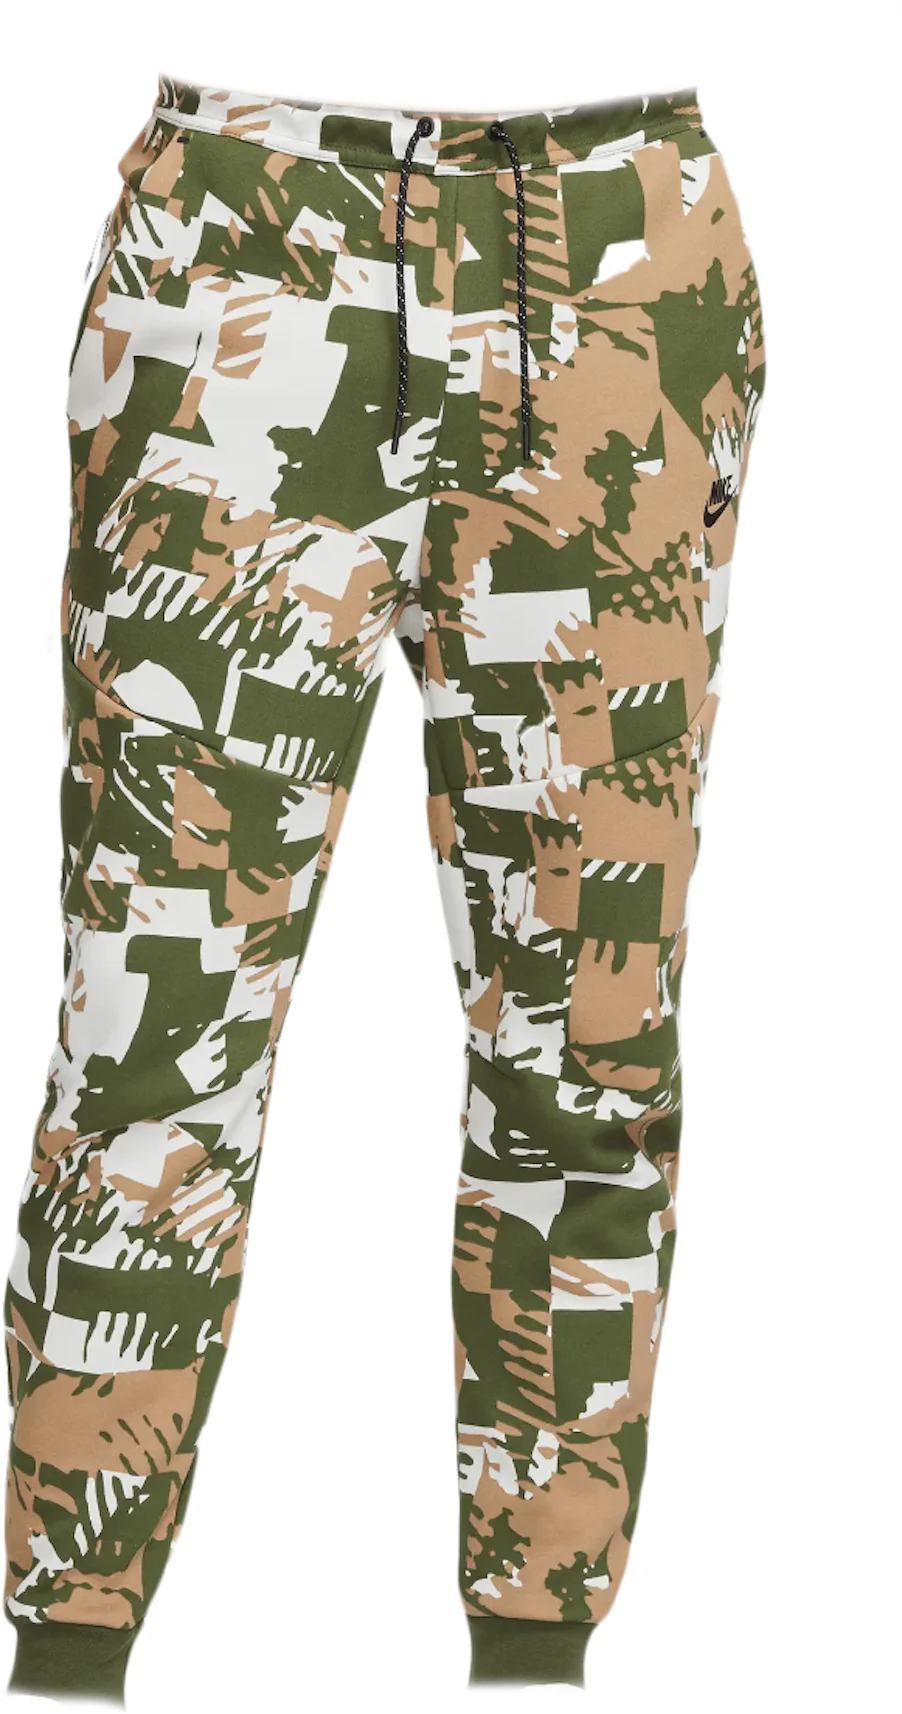 Nike Men's Sportswear Tech Fleece Joggers Green Camo Pants CJ5981